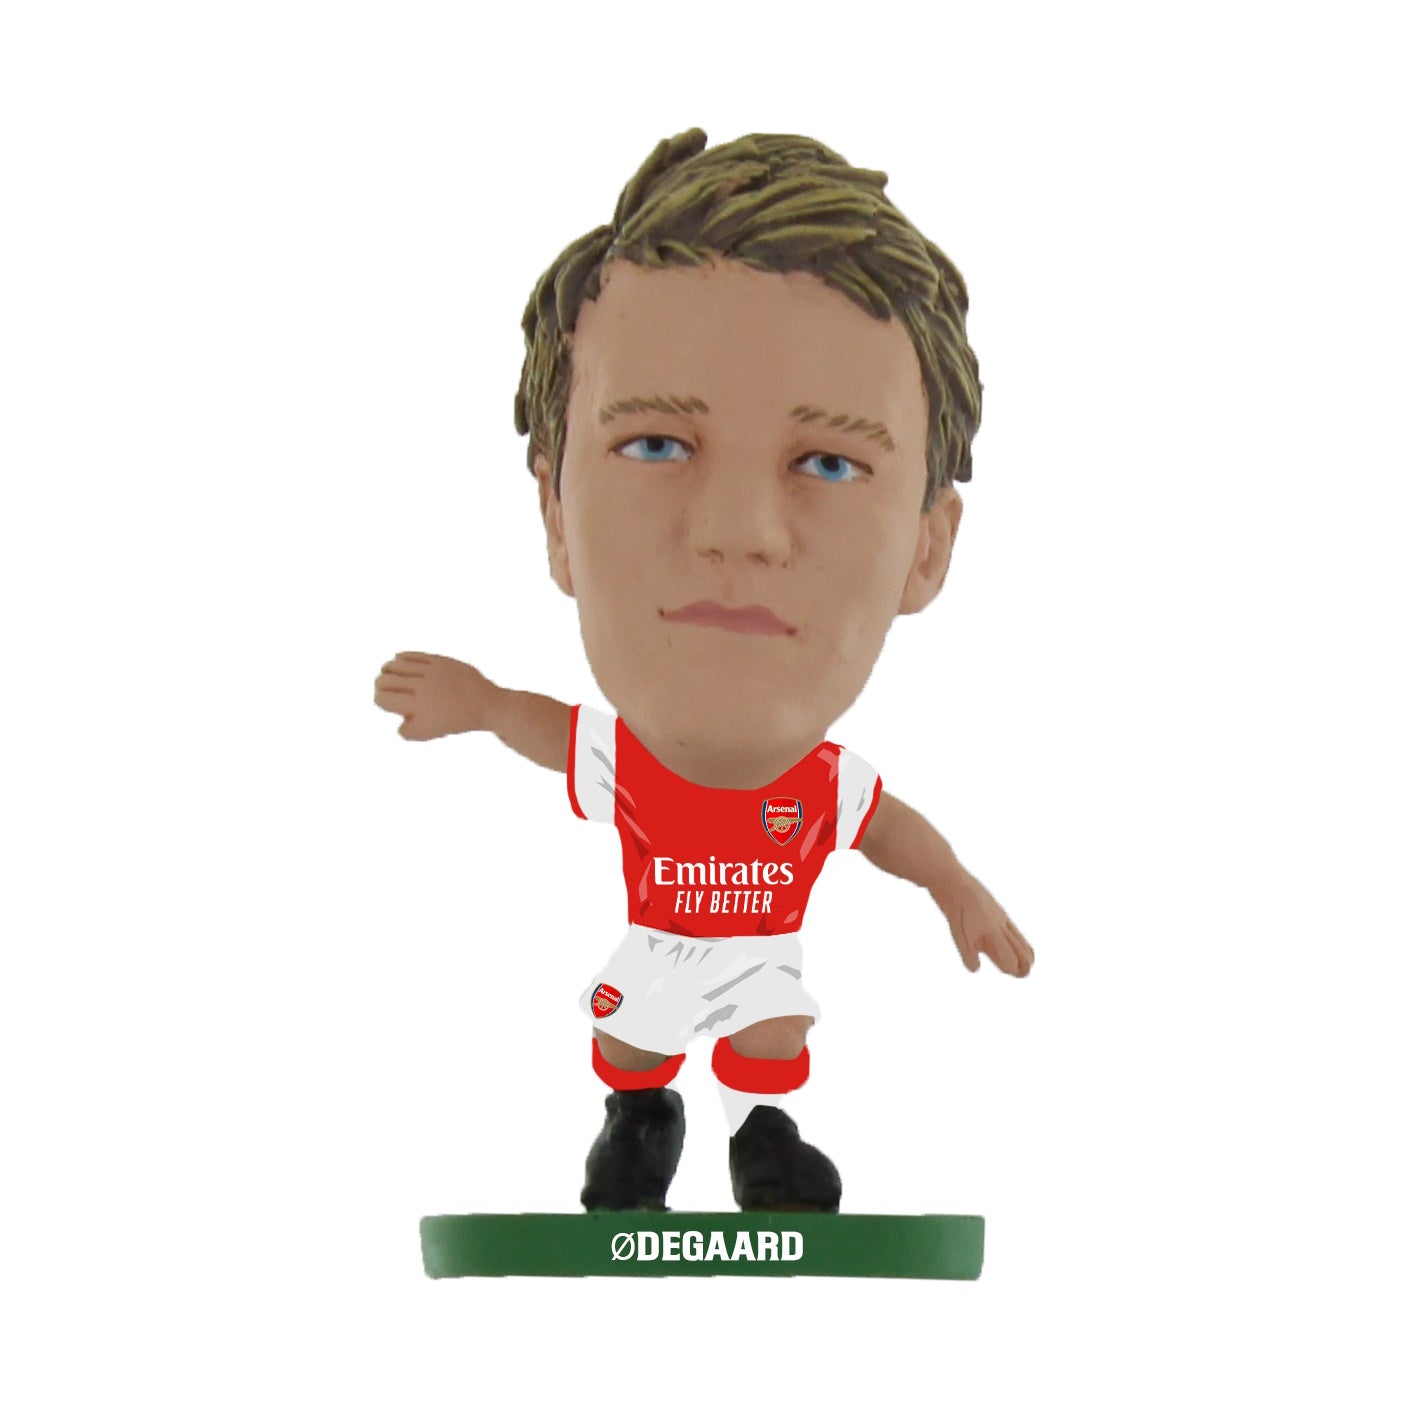 SoccerStarz Official Arsenal Football Figure Chamberlain, Hobbies